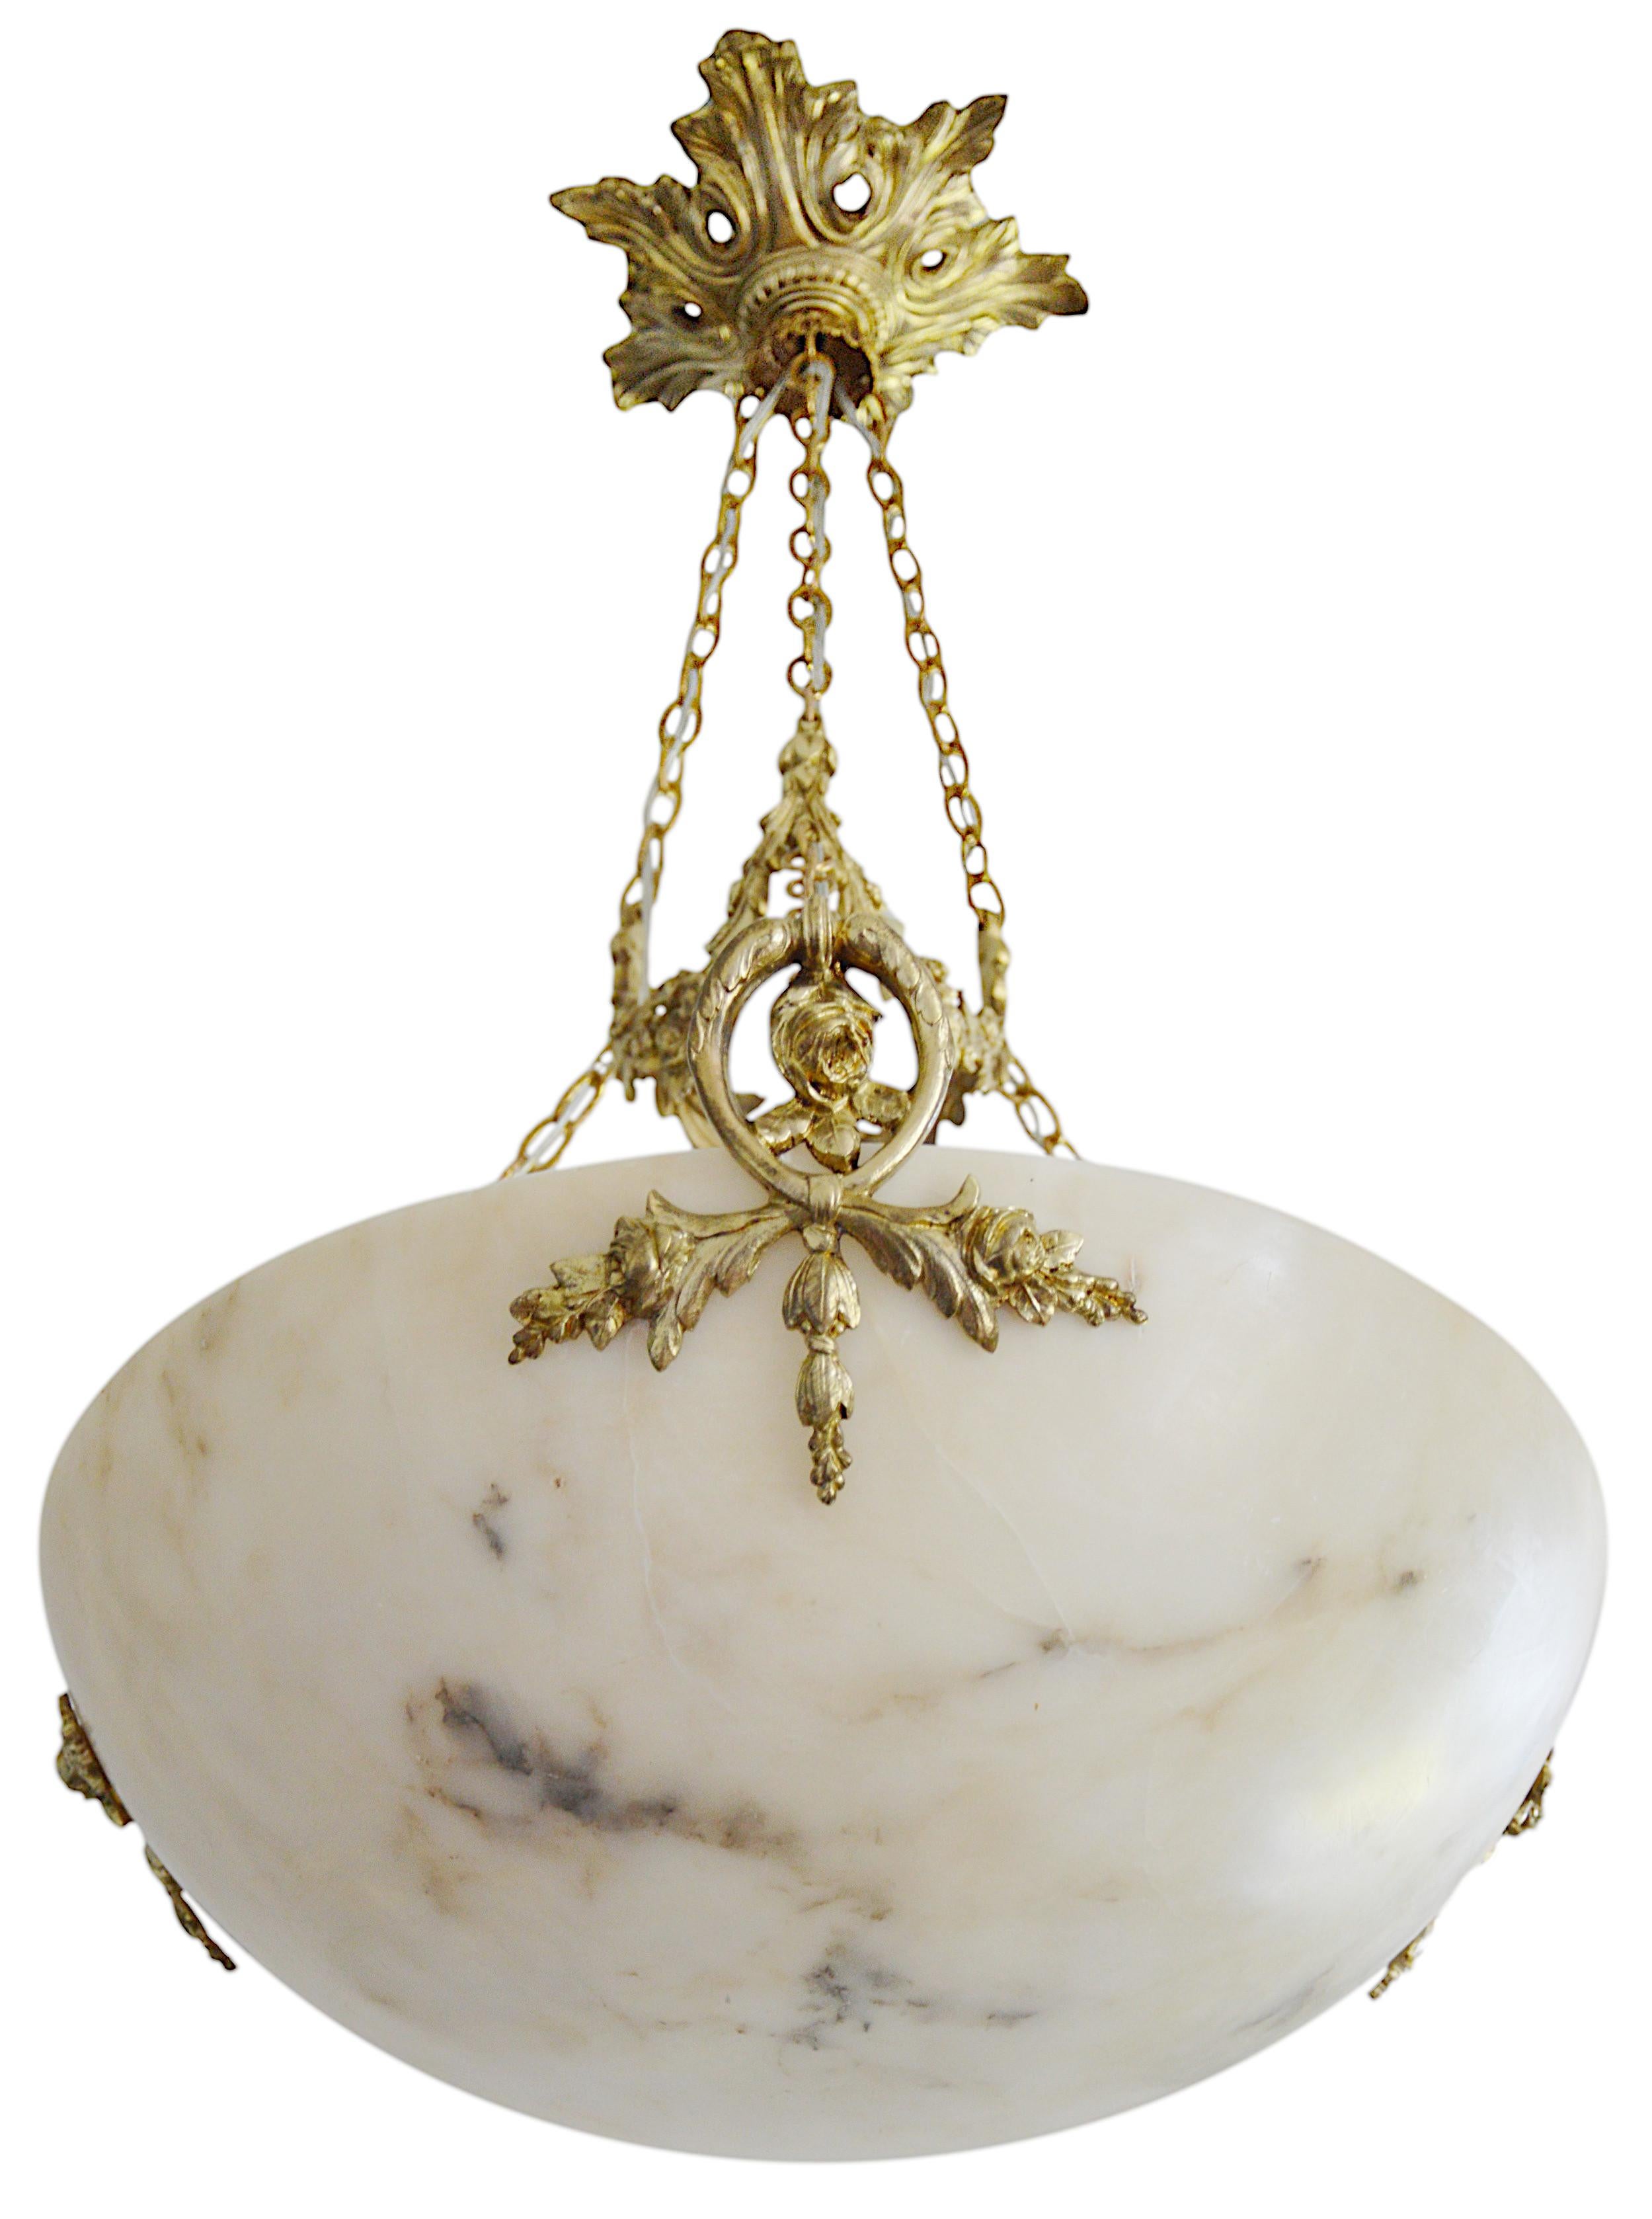 Französischer Art-Déco-Kronleuchter aus Alabaster und Bronze, Frankreich, ca. 1920. Der Alabasterschirm hängt an der bronzenen Halterung. Alter Alabaster kann nicht mit neuem verglichen werden. Alter Alabaster hat Adern. Manchmal kann man sie mit